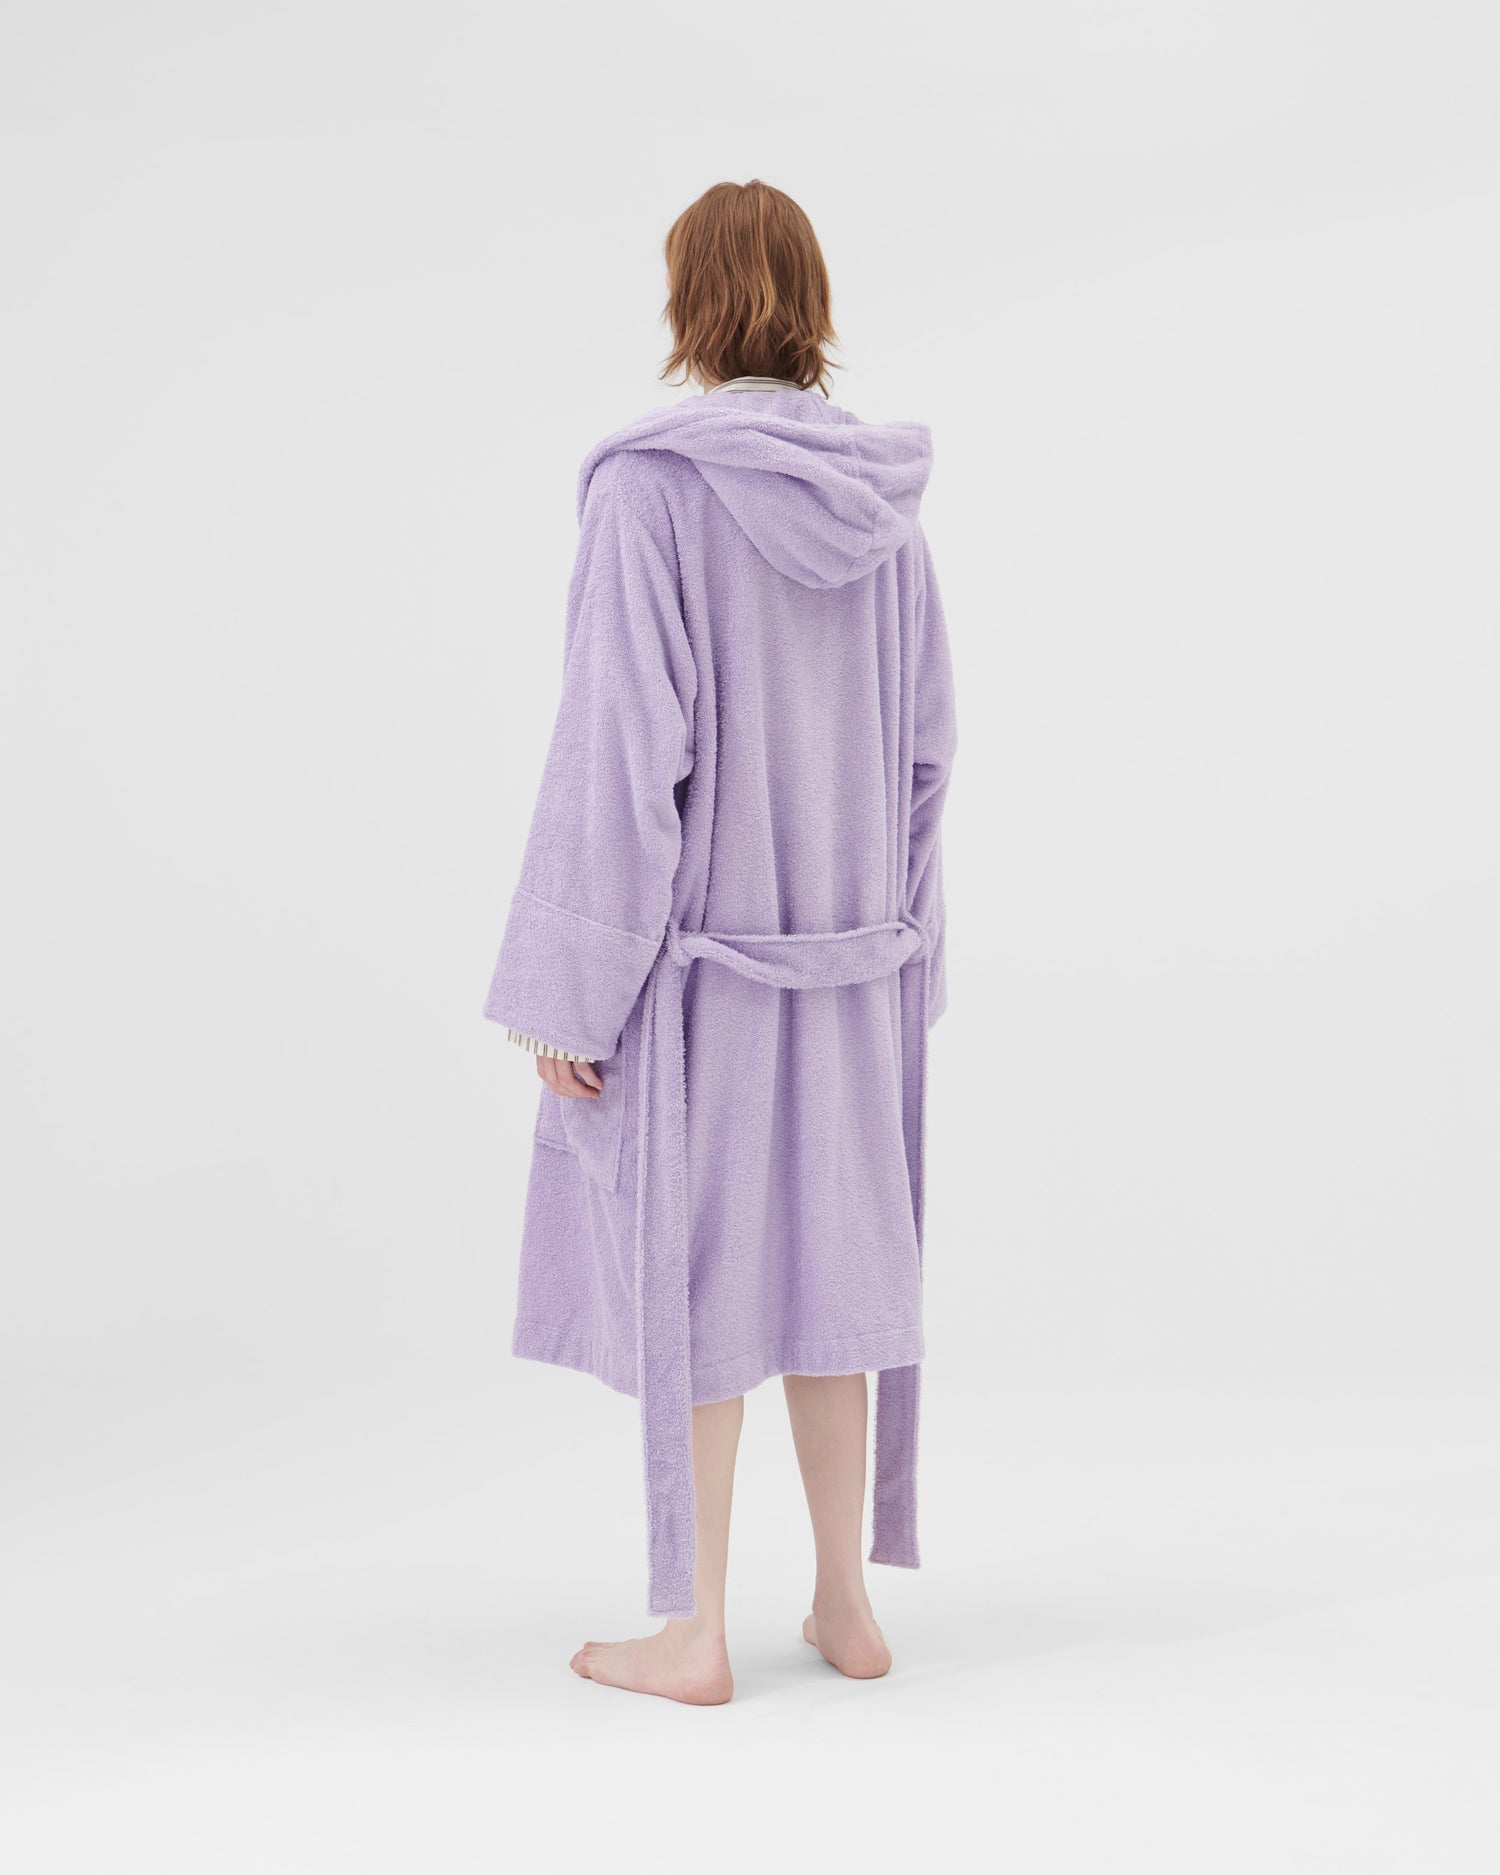 Terry Hooded bathrobe, lavender, S